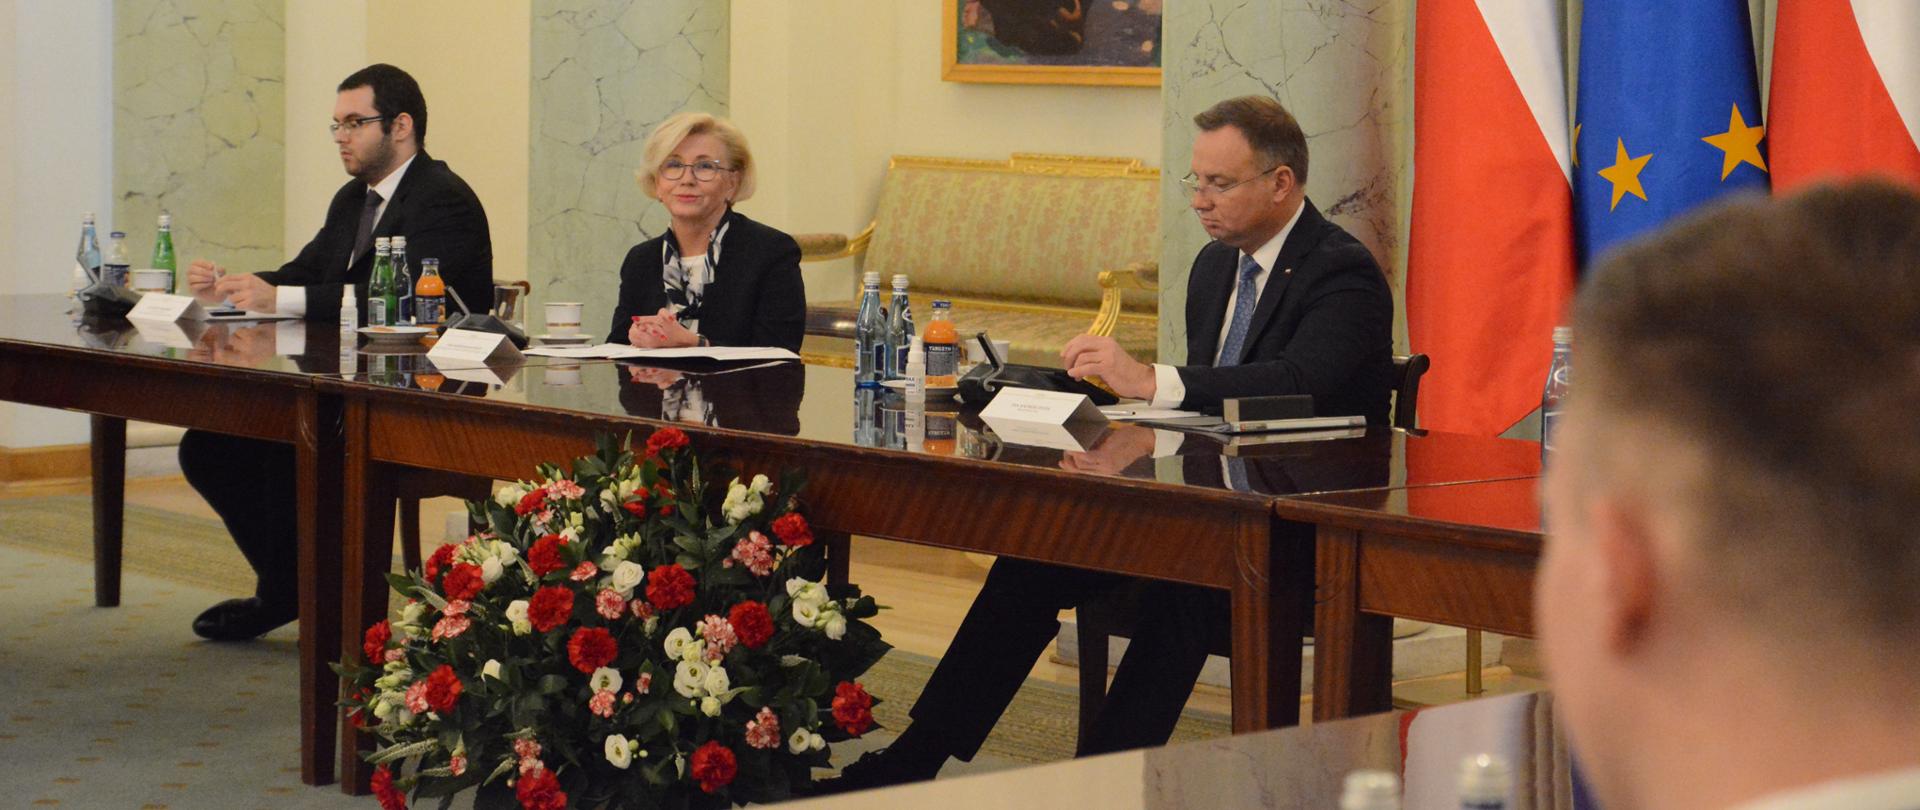 na zdjęciu widoczny z prawej strony Prezydent Duda, z prawej strony siedzi Wiceminister Marzena Machałek. siedzą przy stole, przed nimi biało czerwone kwiaty. z prawej strony prezydenta stoją 2 flagi polski i po środku nich flaga UE